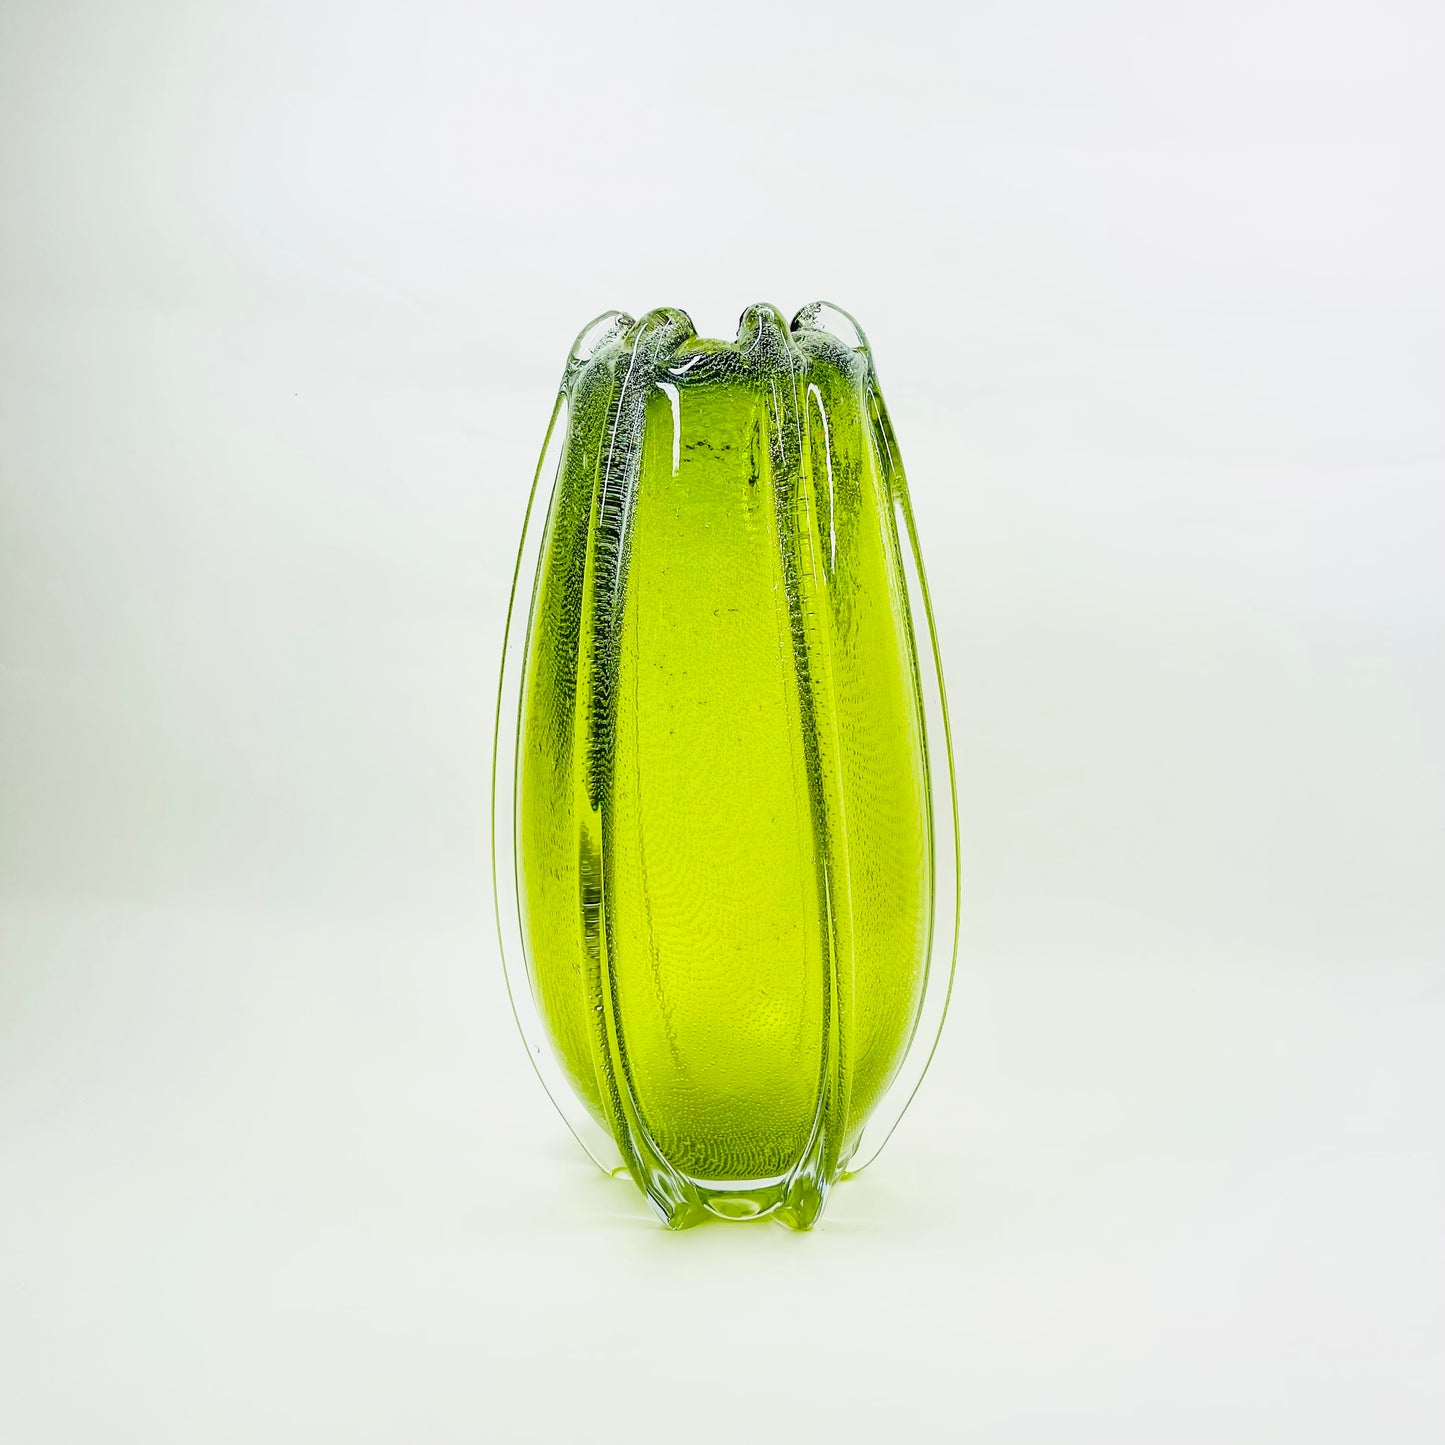 LARGE GREEN ART GLASS VASE